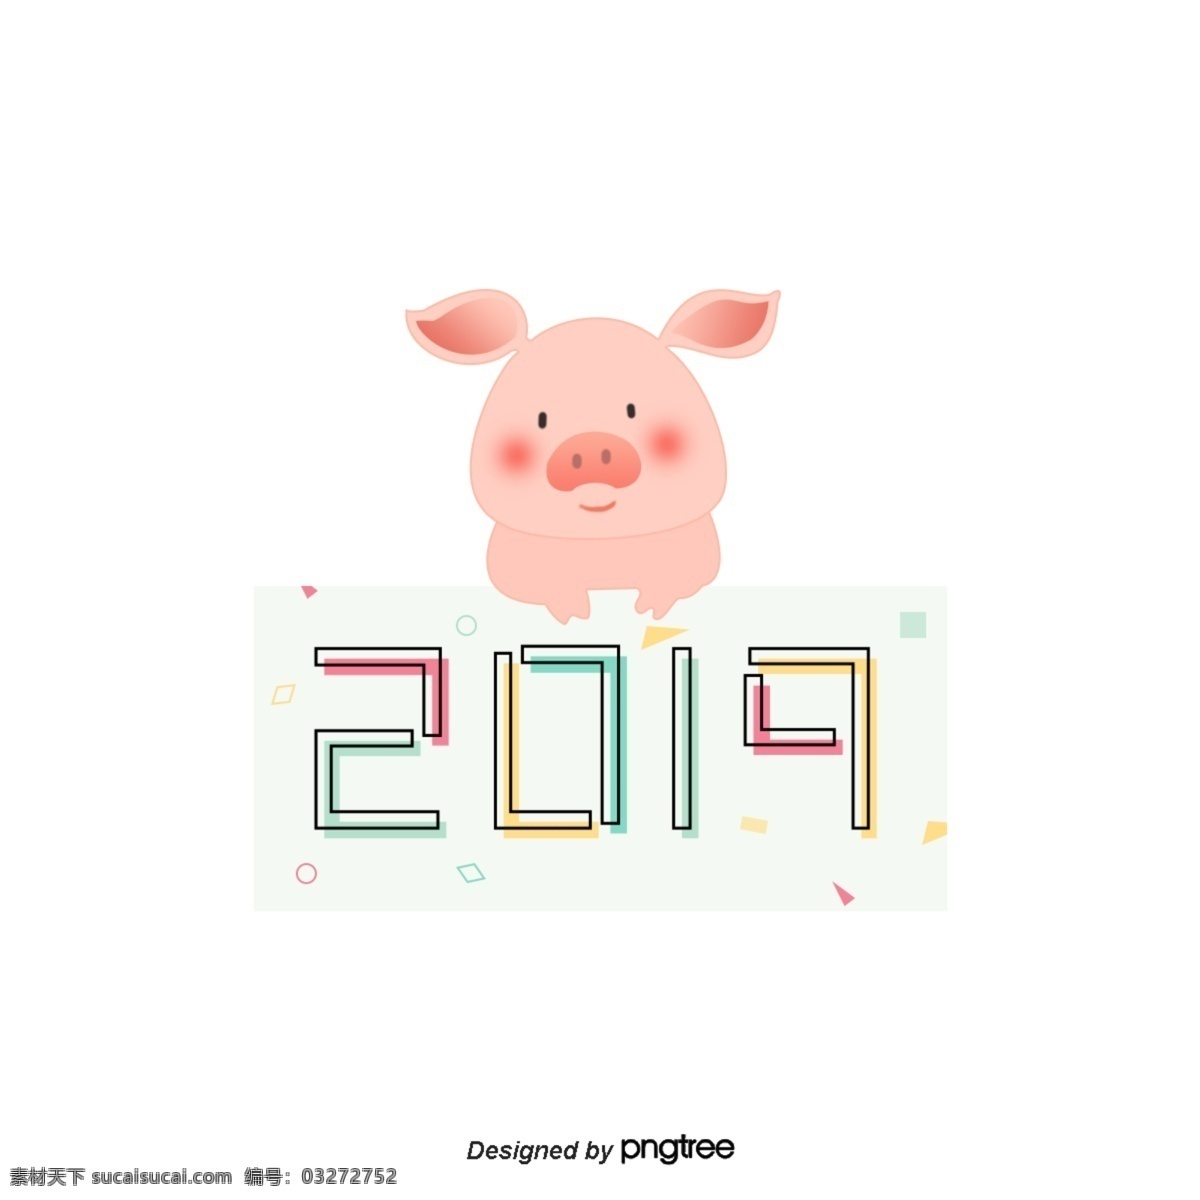 新年快乐猪年 新年快乐 猪2019年 粉红猪